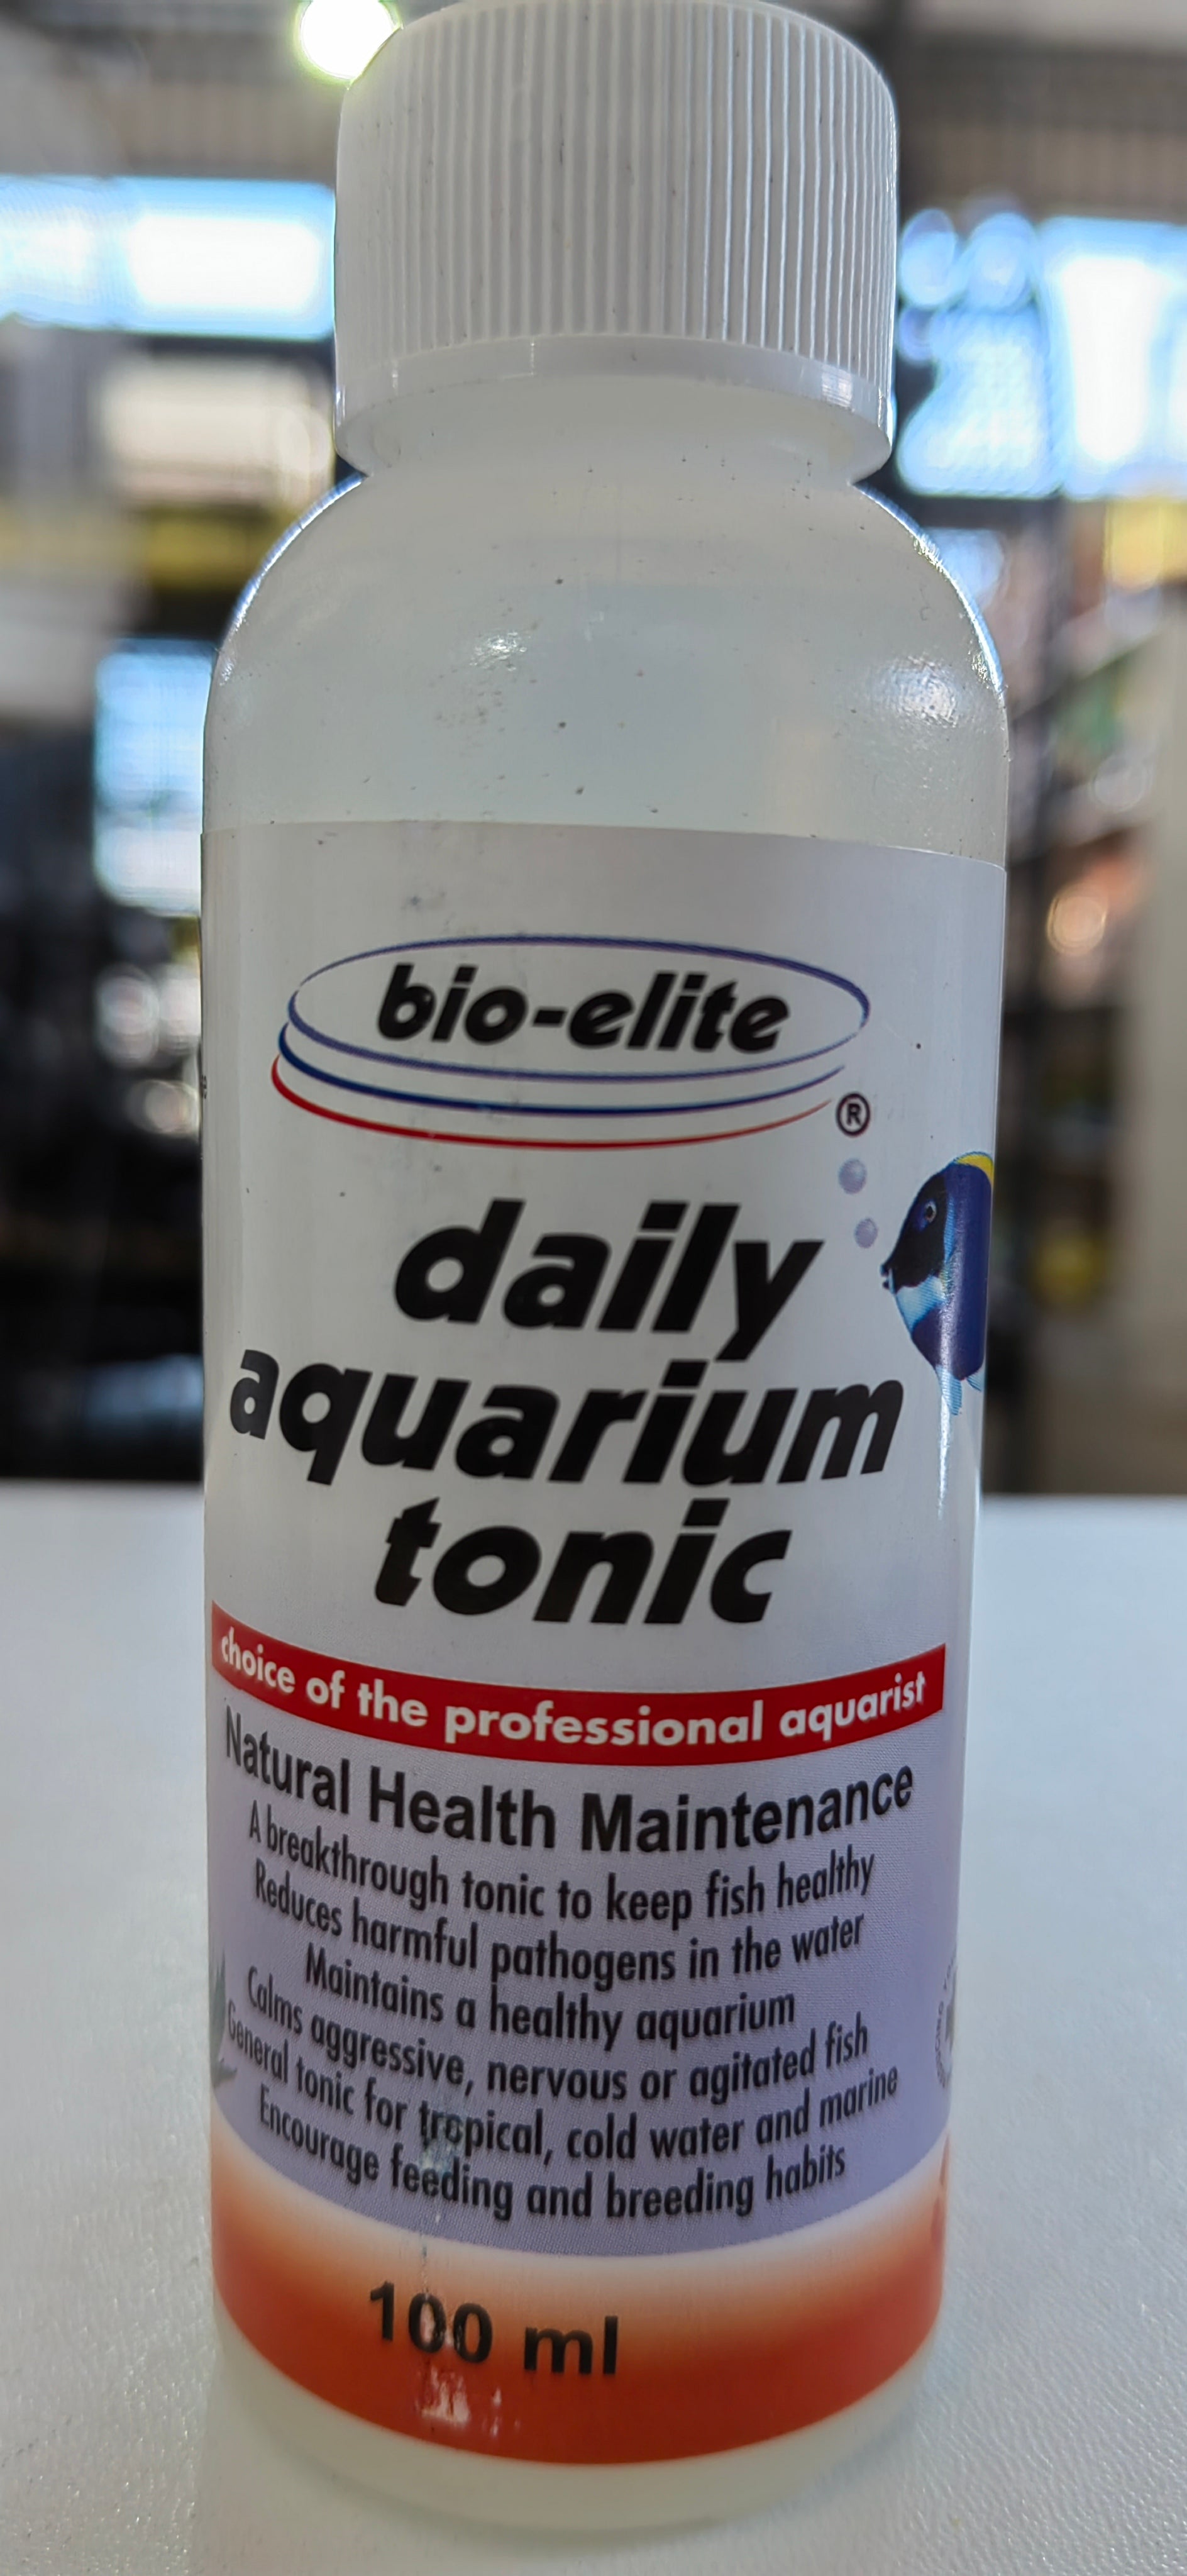 Bio-Elite Daily Aquarium Tonic